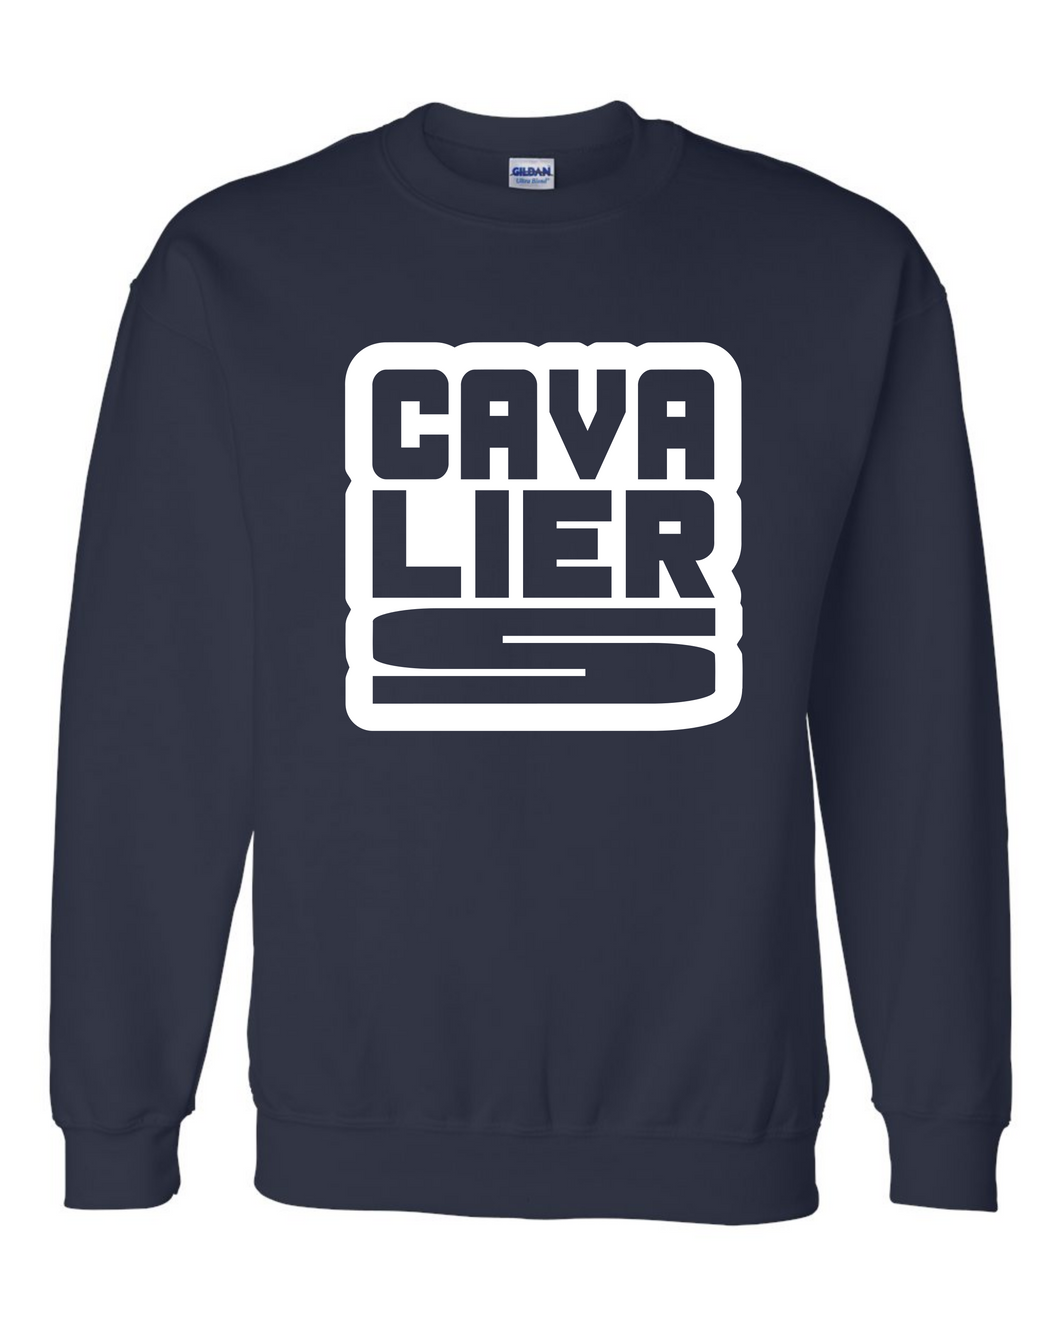 CAVALIERS Square Design Sweatshirt